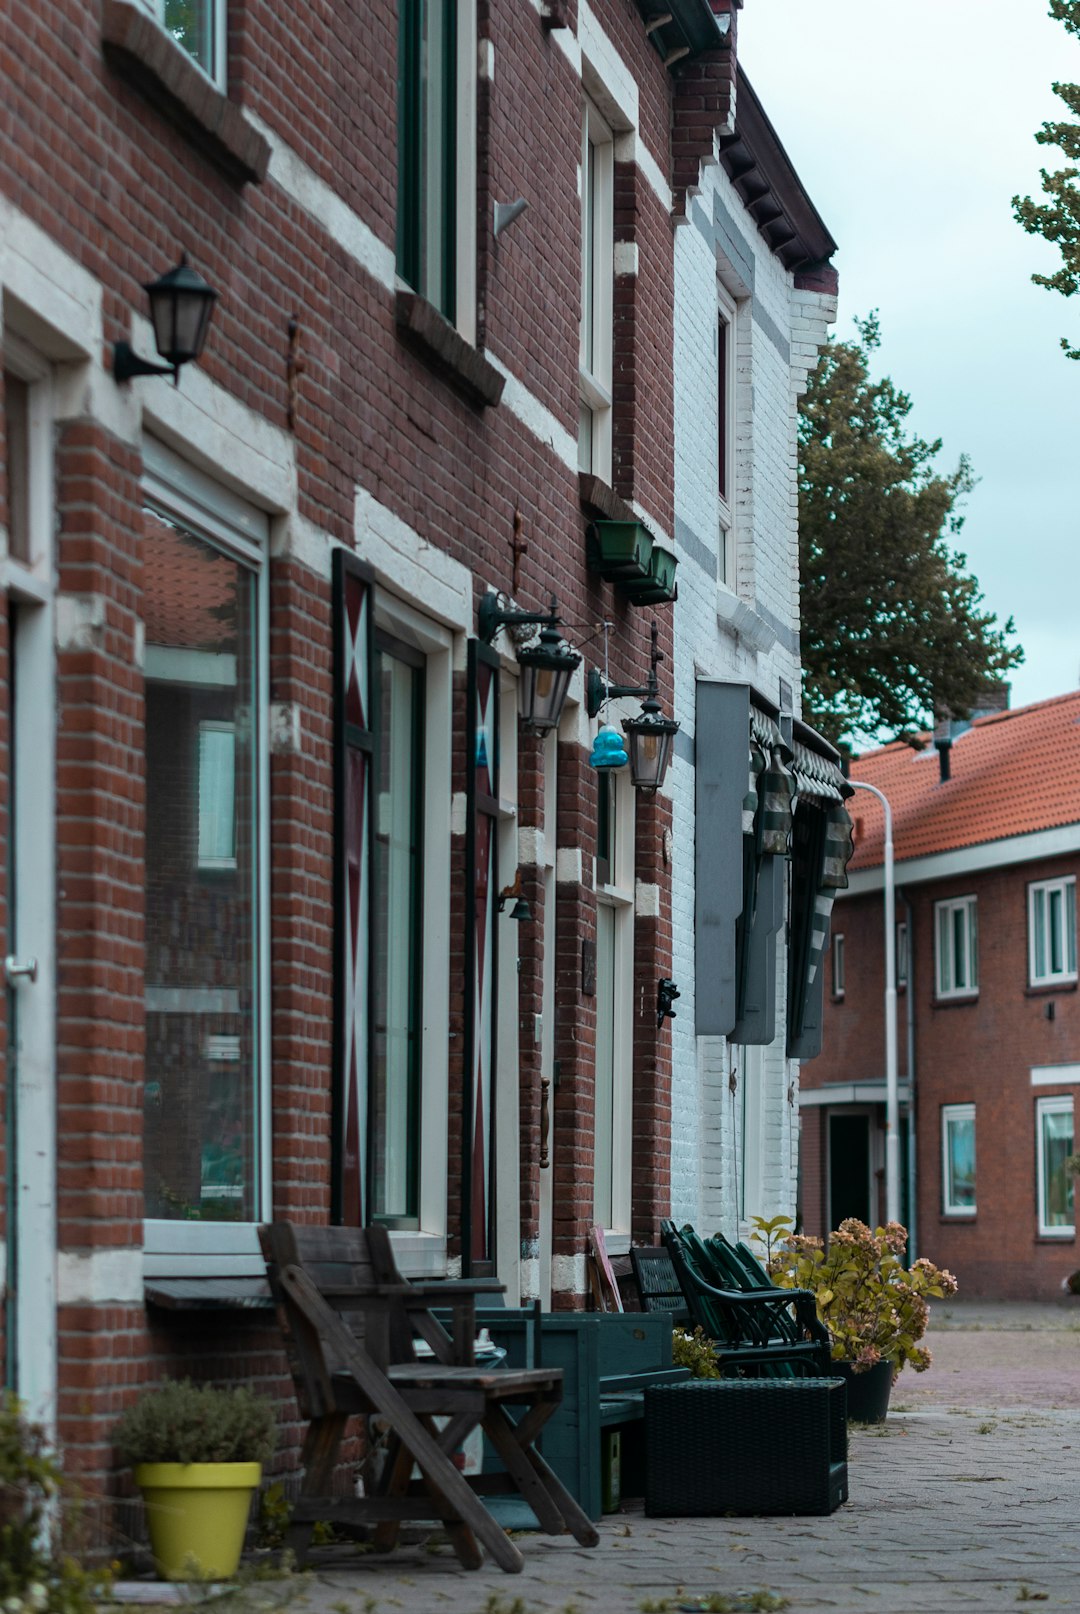 Town photo spot IJmuiden Hague